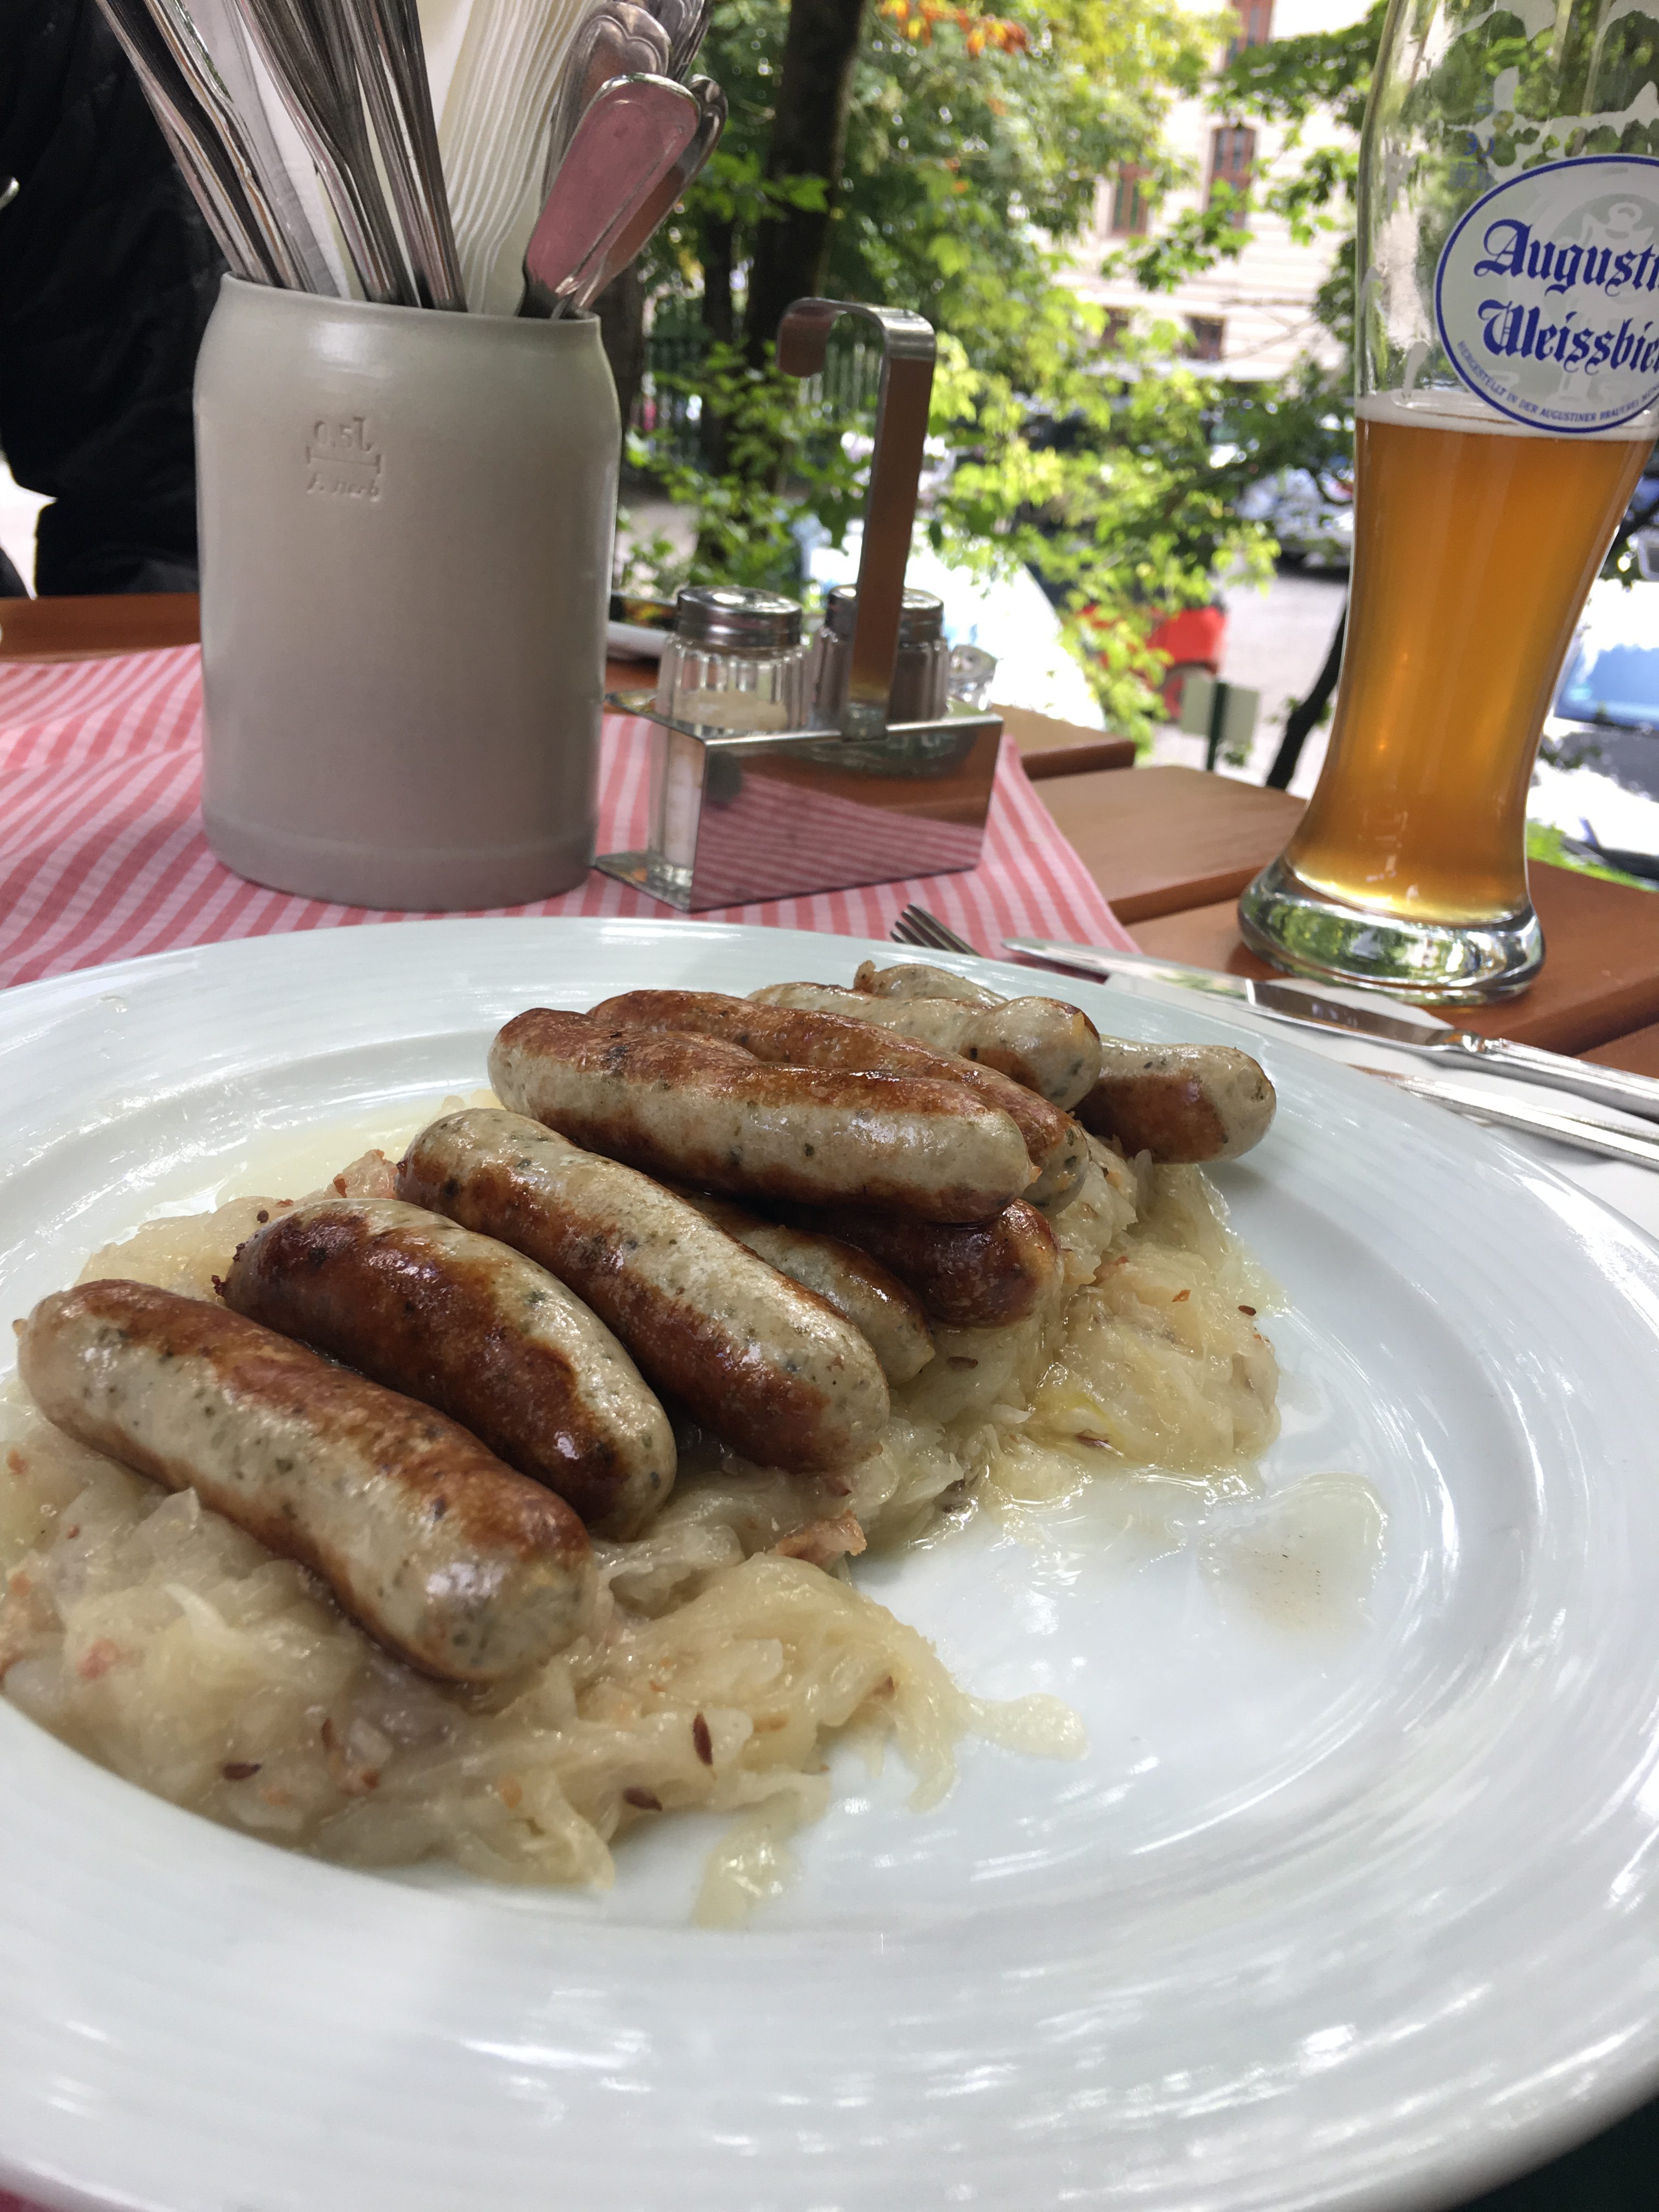 Sausage plate at Augustiner Keller